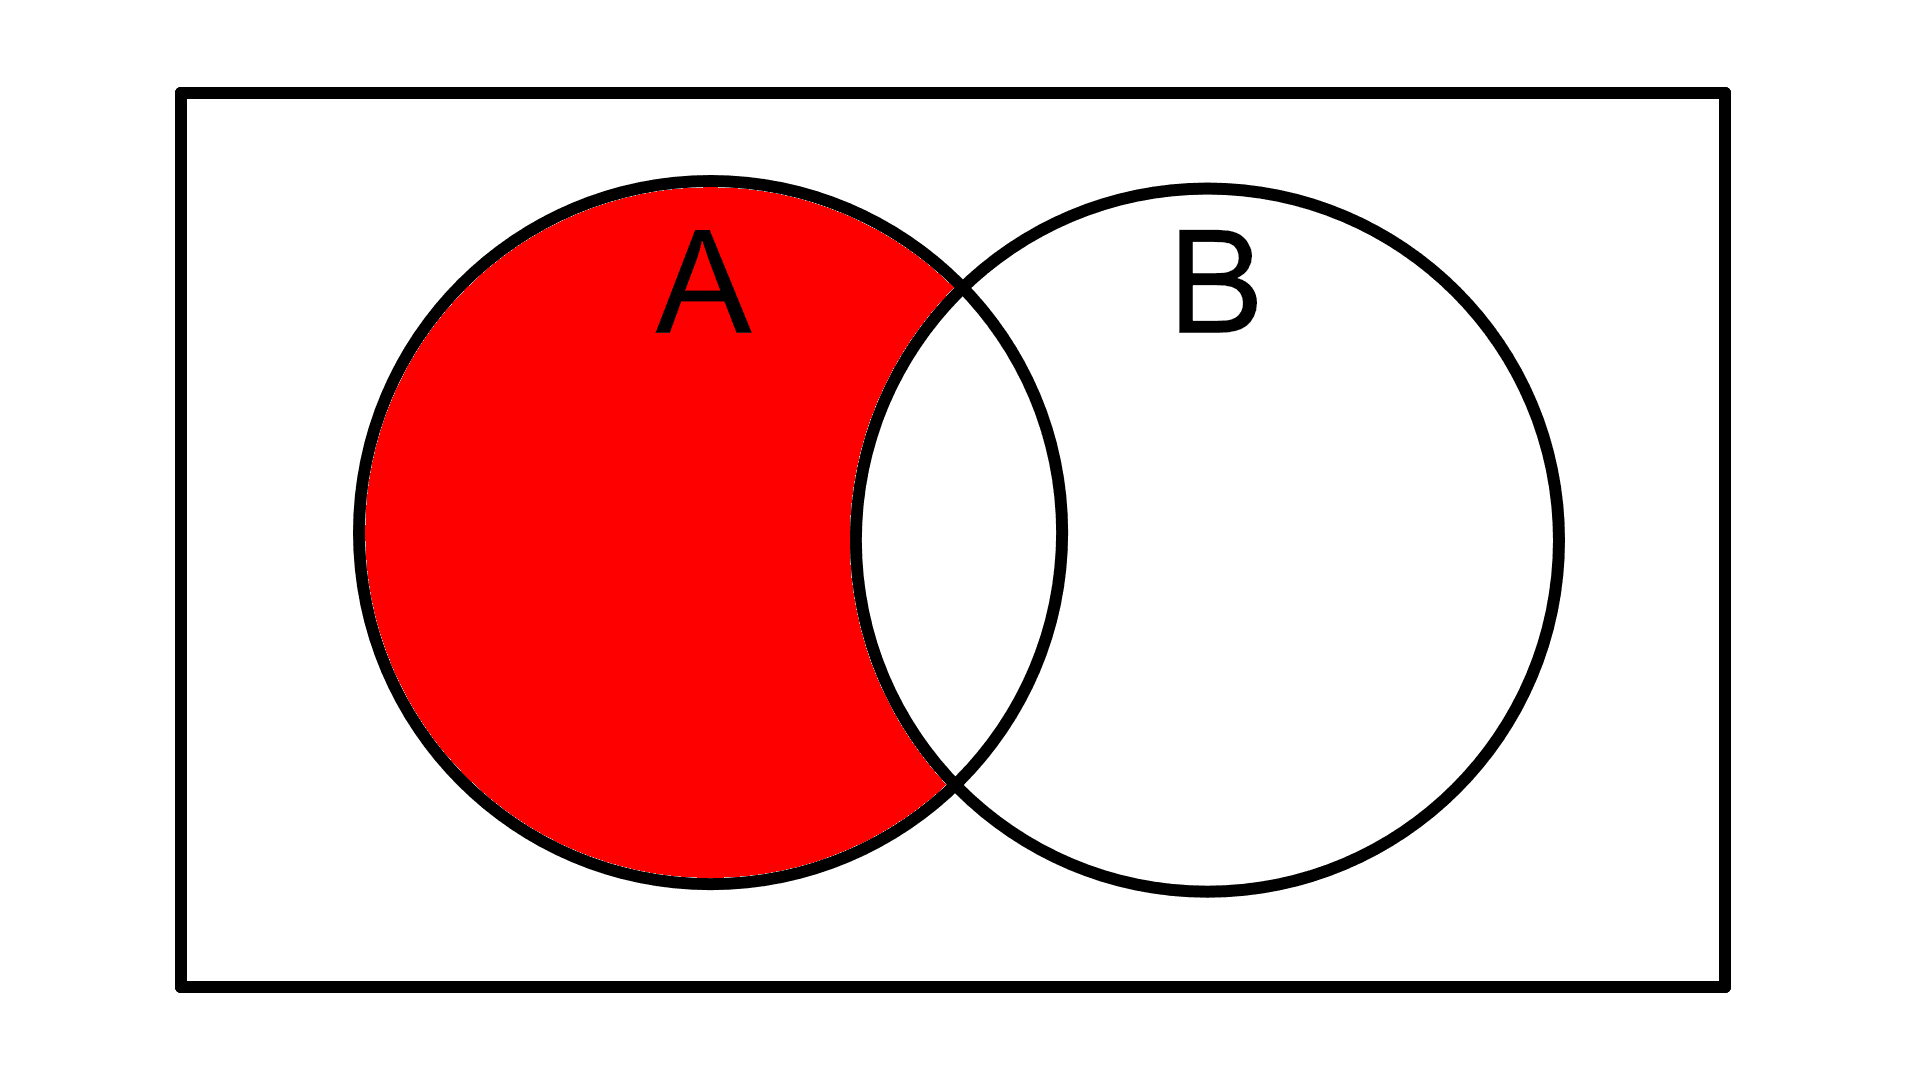 2 elipsy w prostokącie z zamalowaną częścią elipsy A, która nie przecina elipsy B.